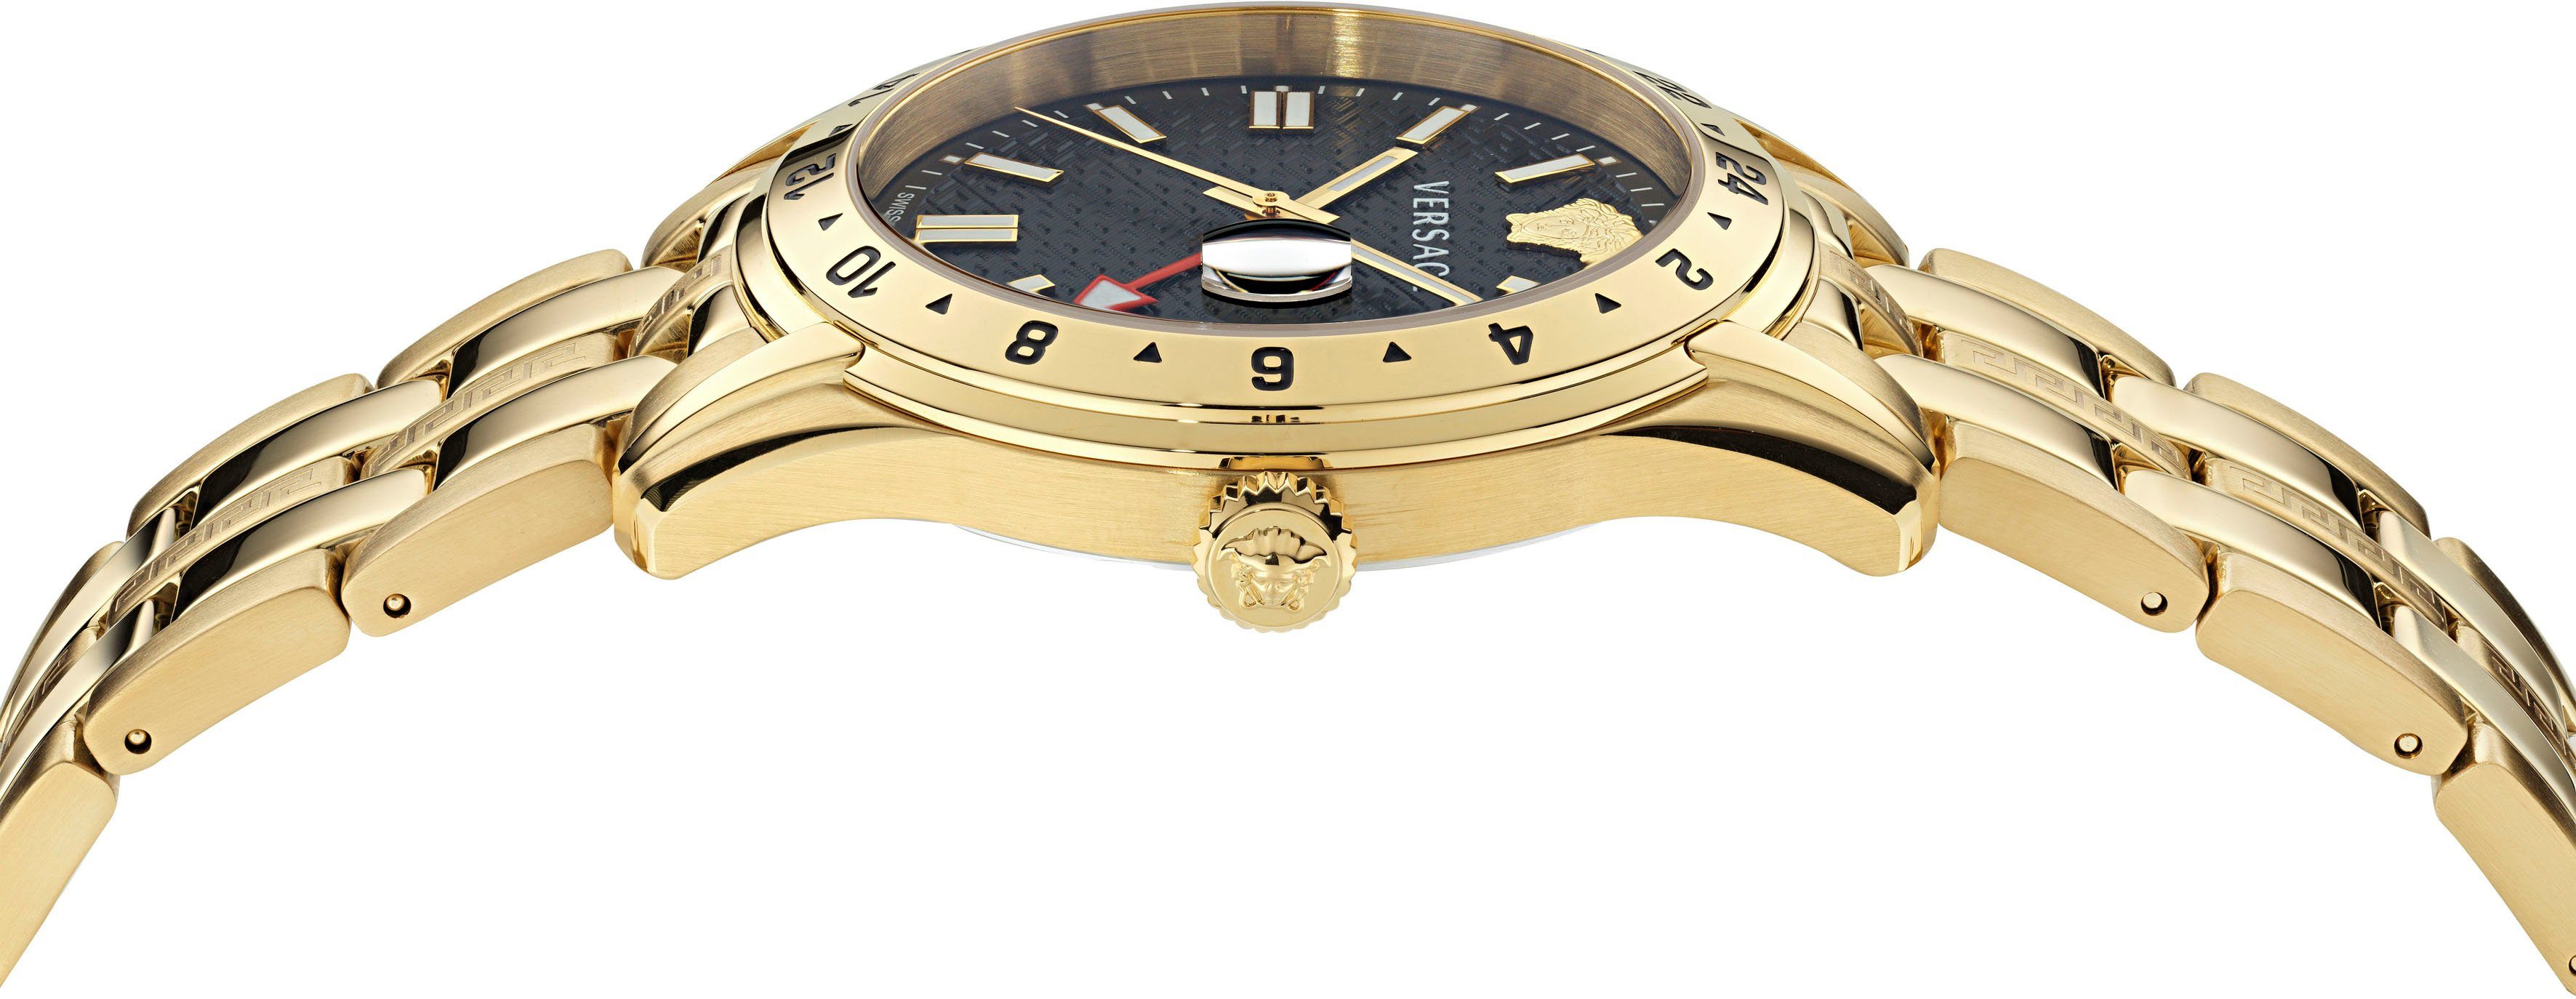 VE7C00723, TIME Versace GRECA IP-beschichtetem goldfarben Armband GMT, aus Edelstahl Quarzuhr